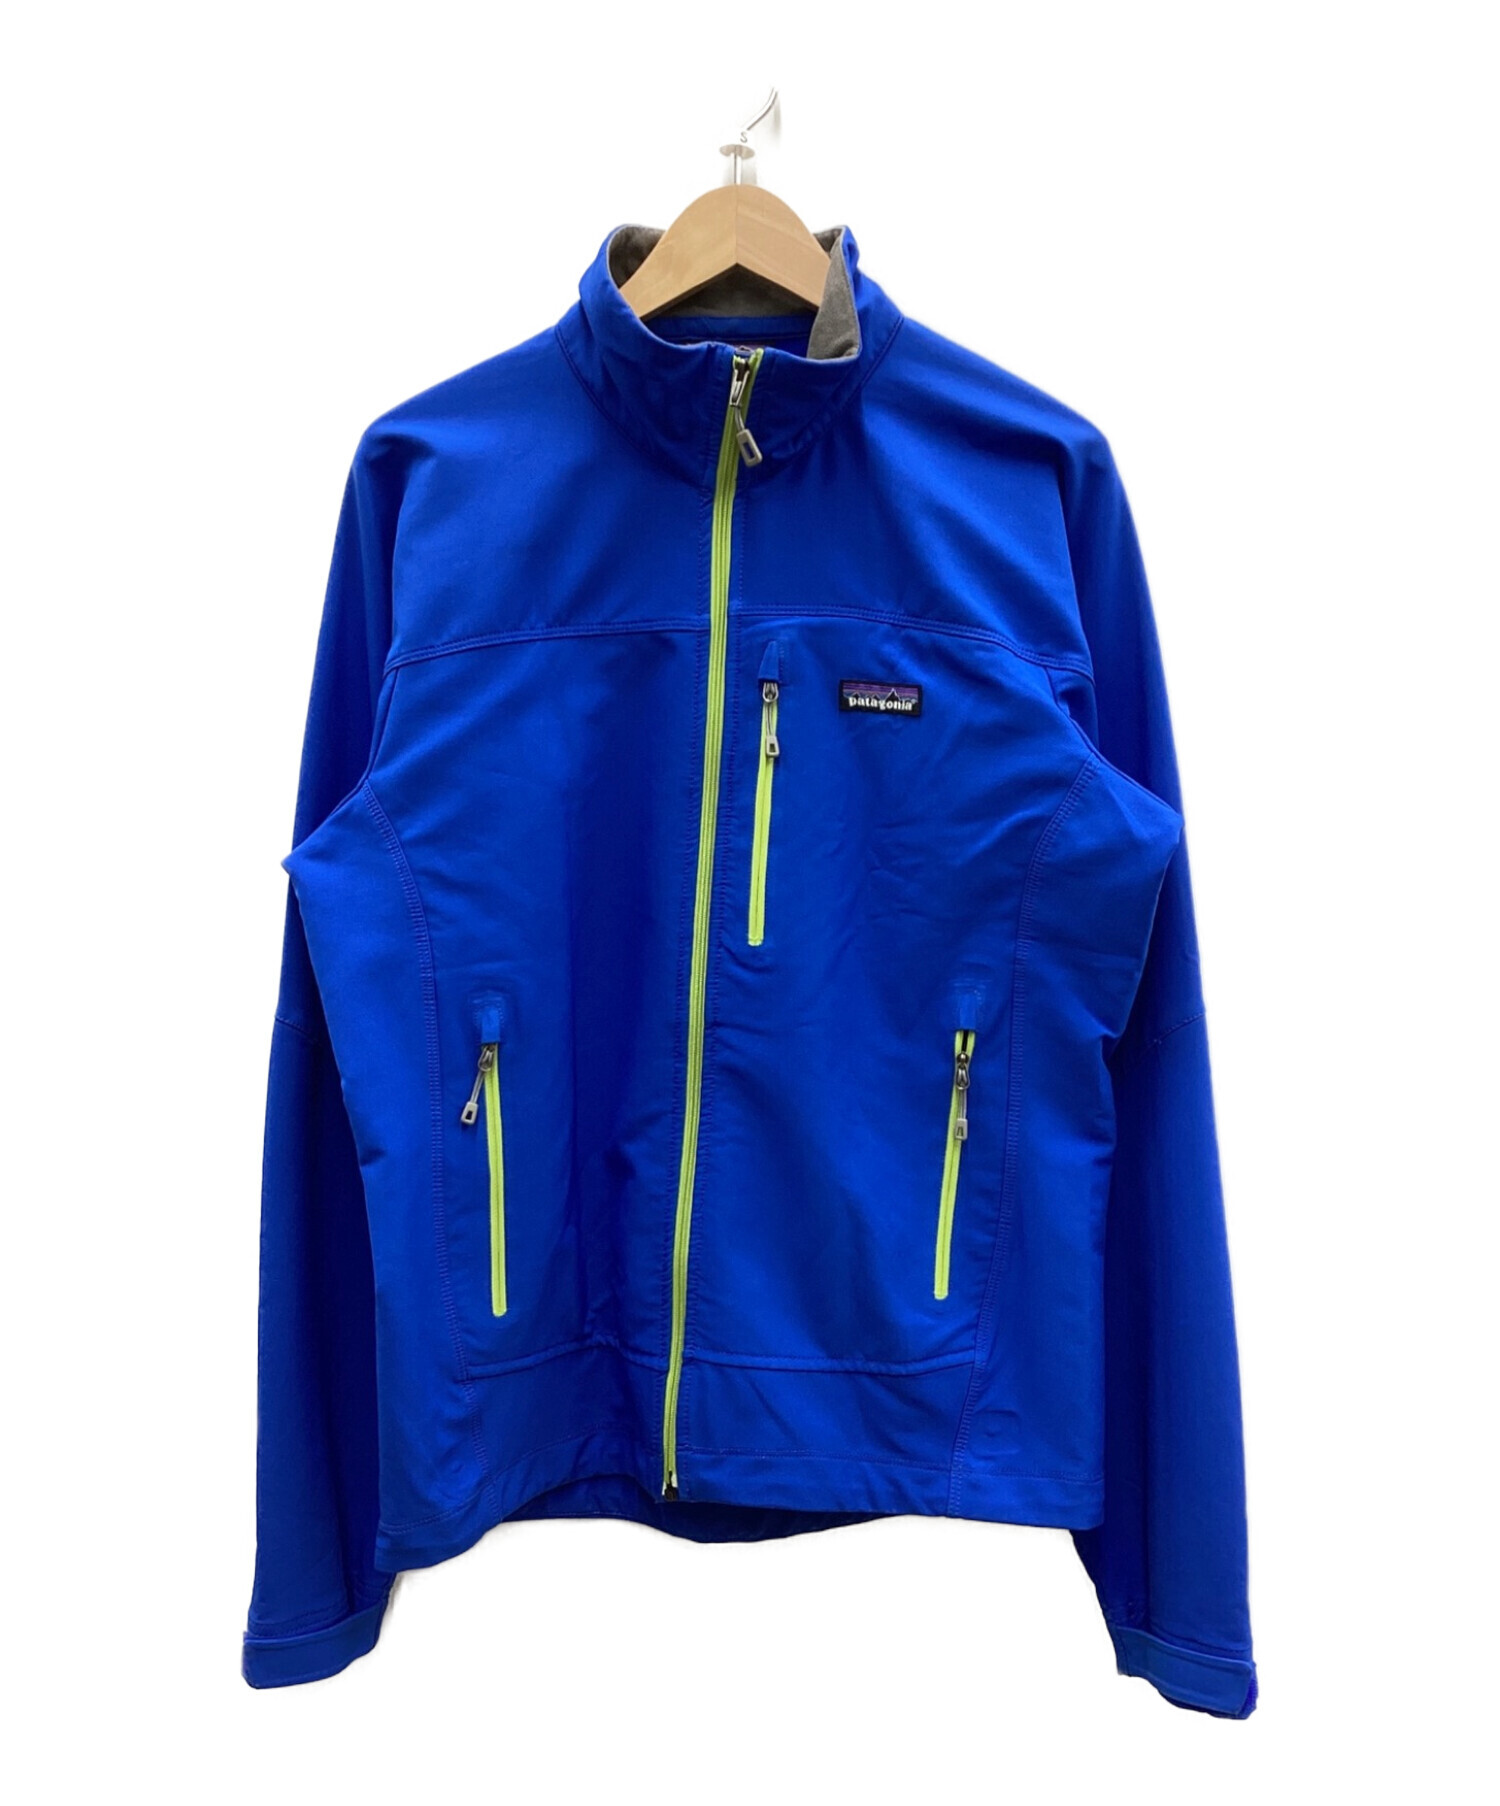 Patagonia (パタゴニア) シンプルガイドジャケット ブルー サイズ:S